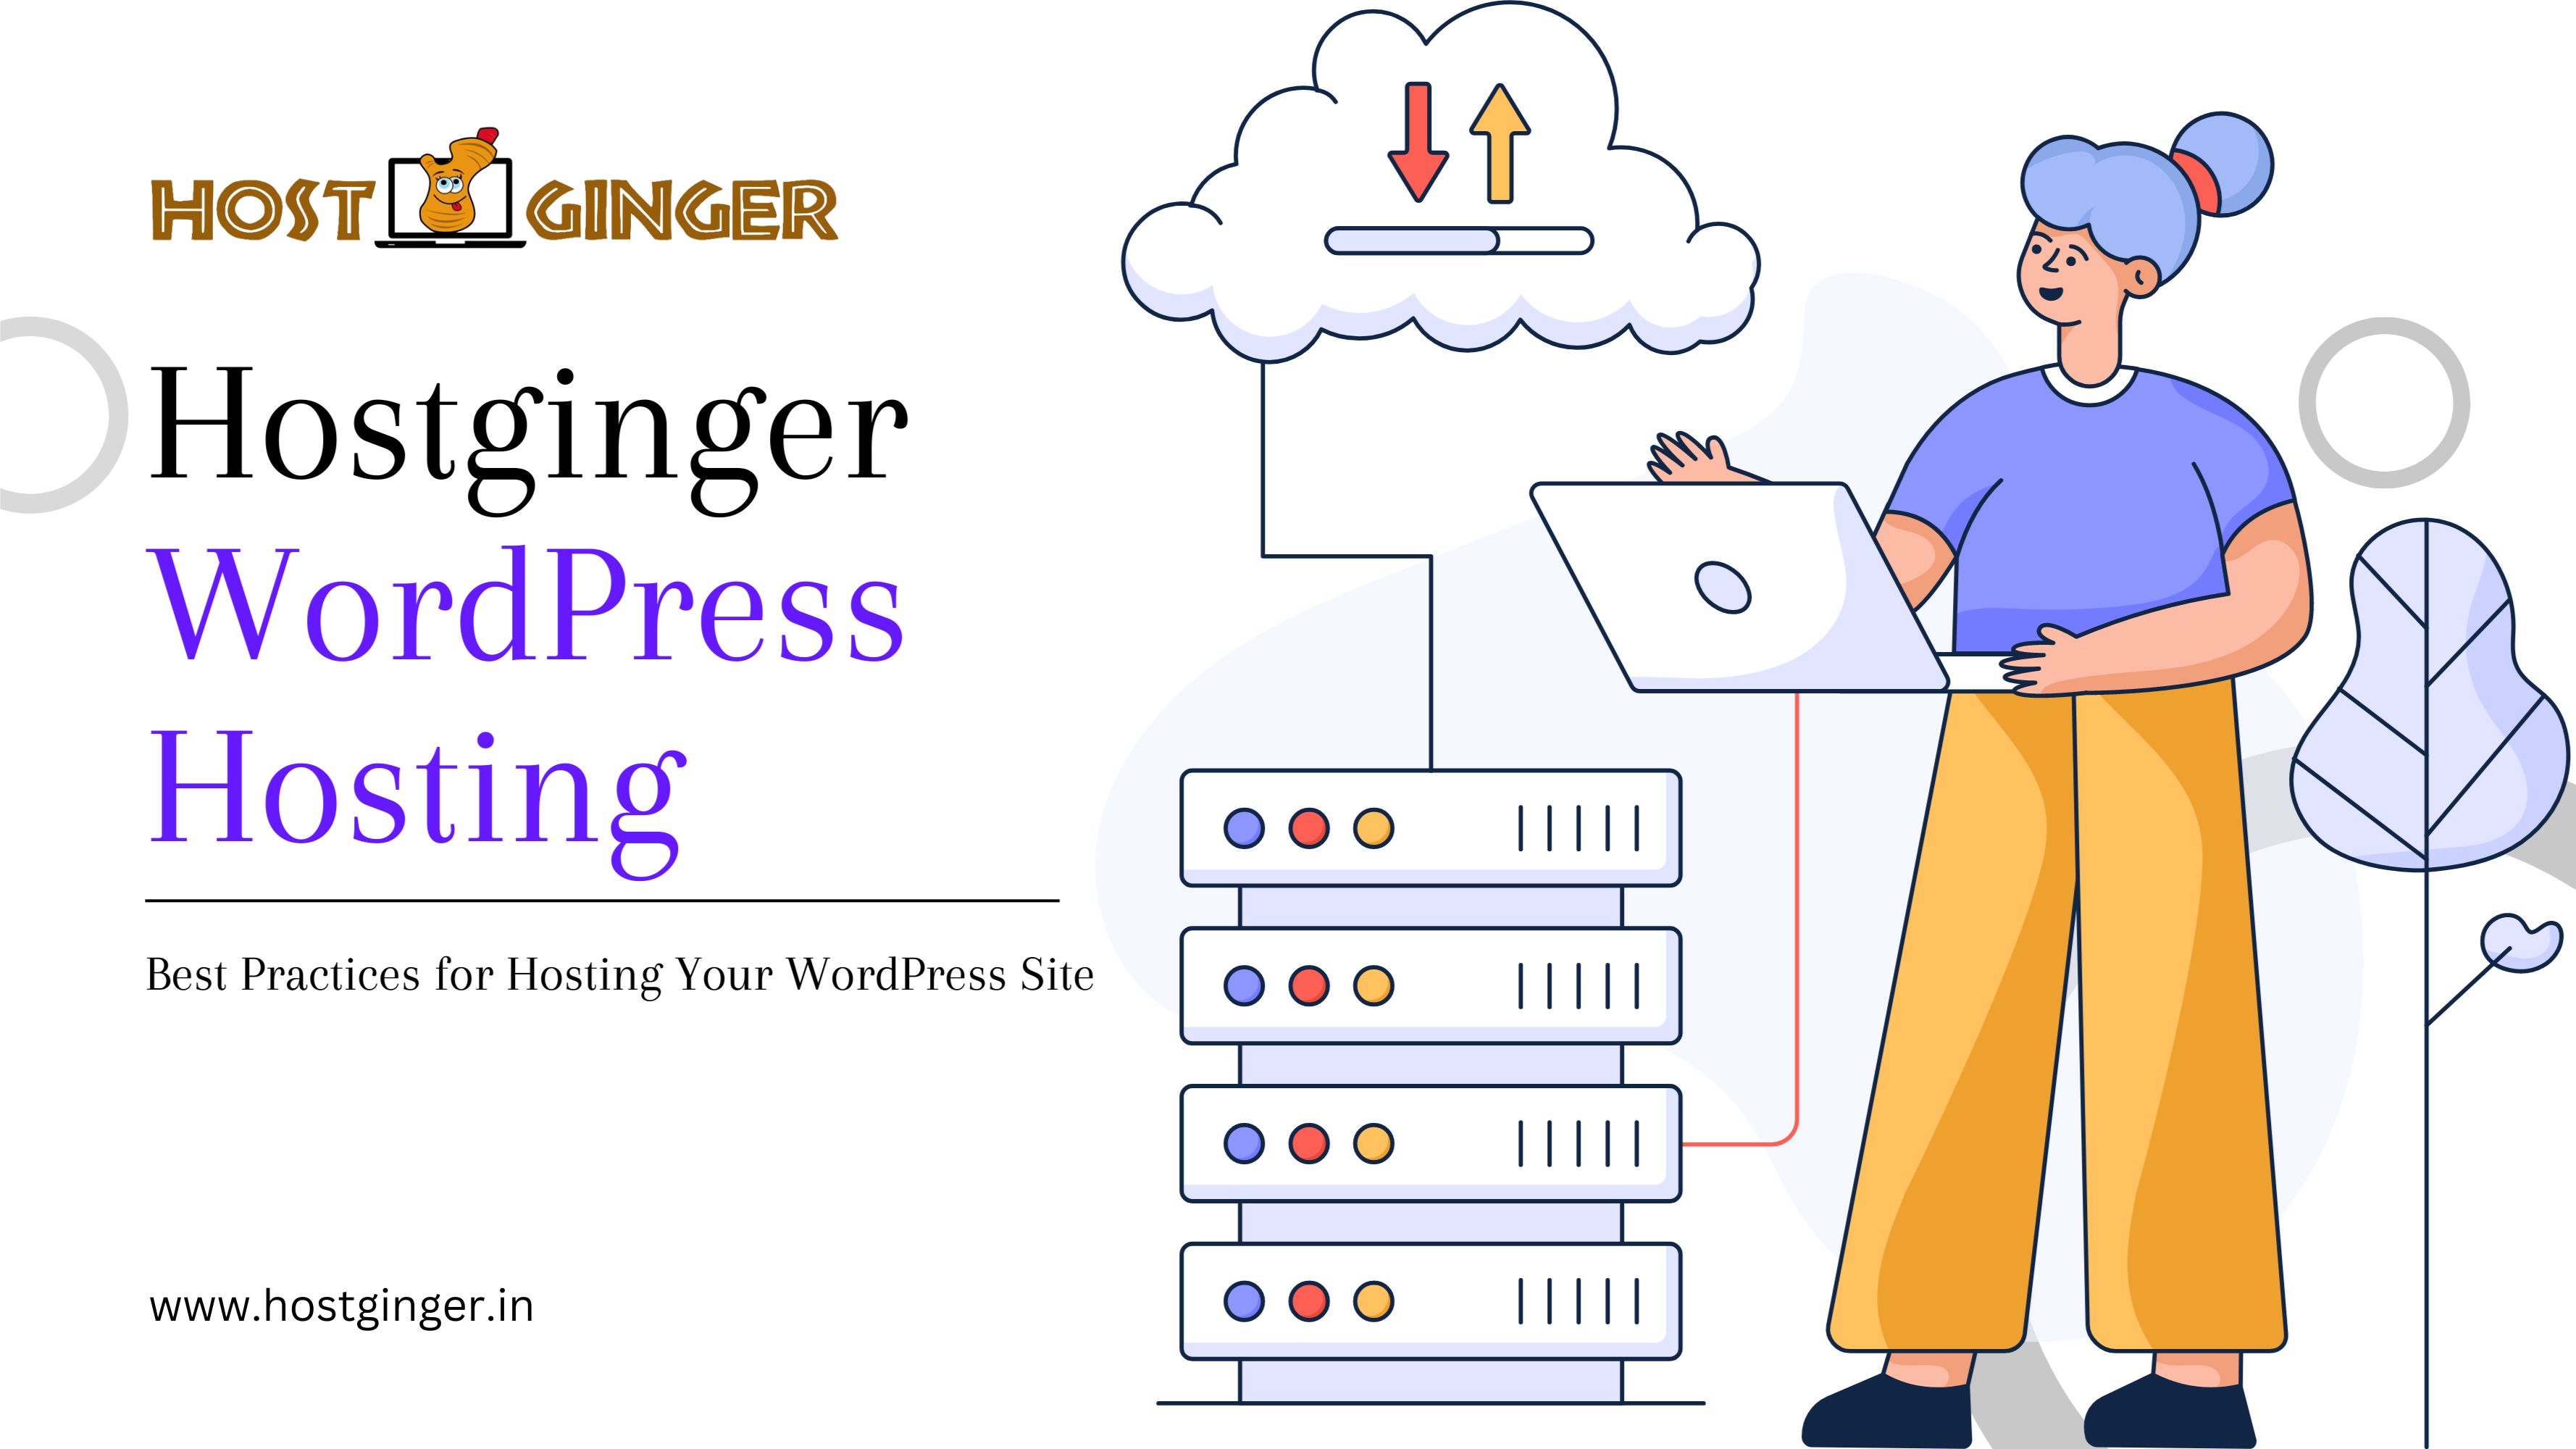 Hostginger WordPress Hosting